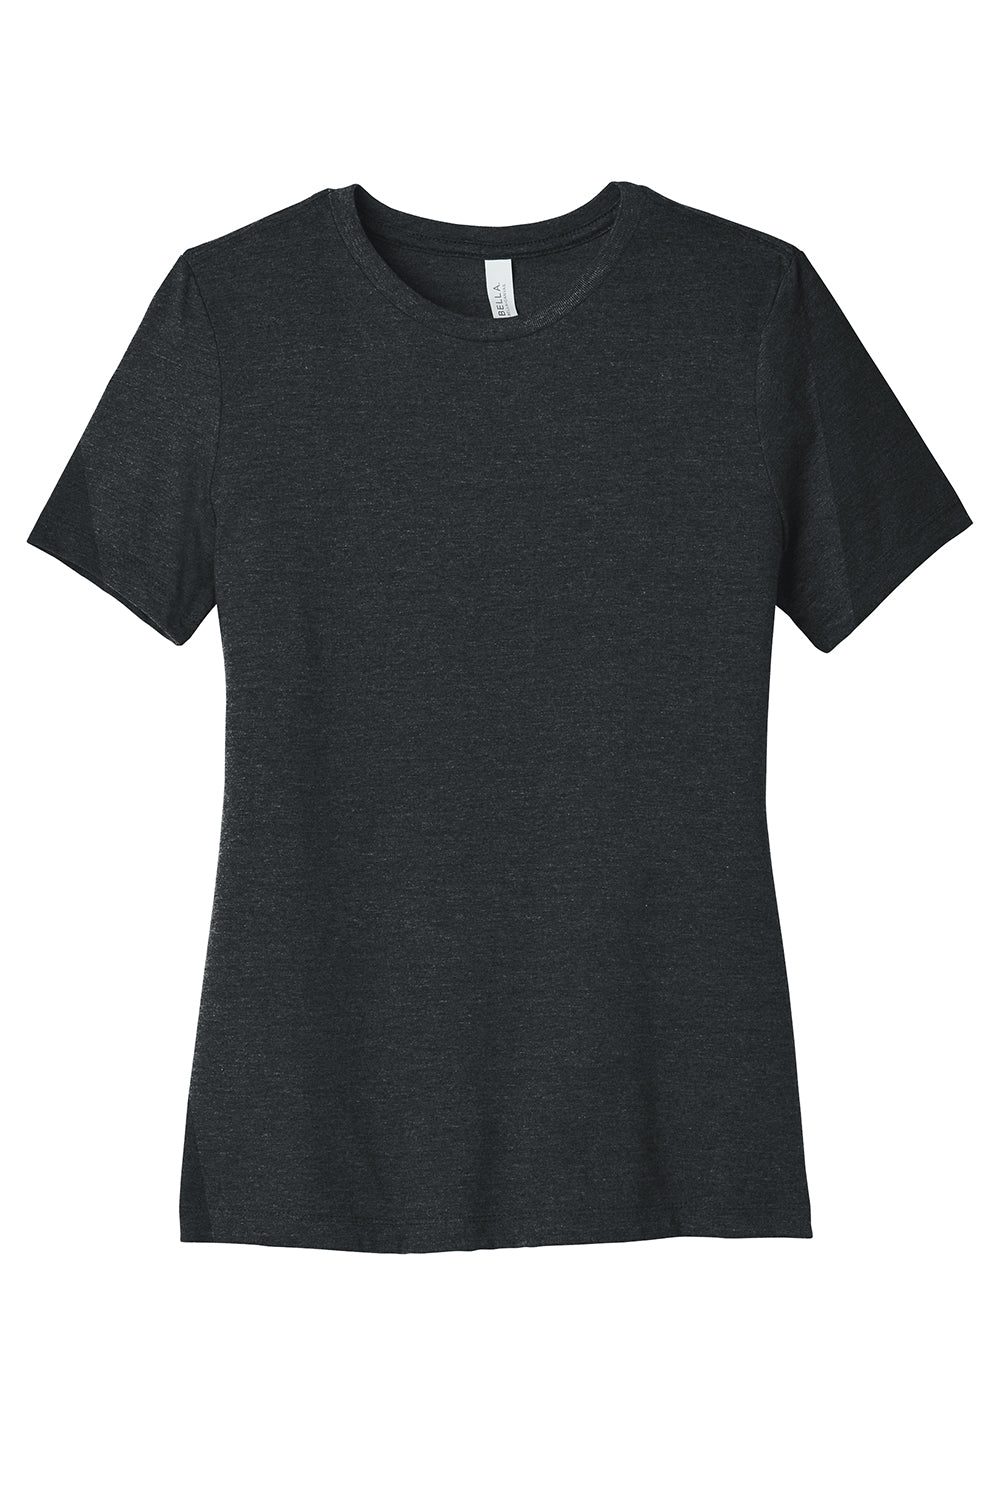 Bella + Canvas BC6400CVC/6400CVC Womens CVC Short Sleeve Crewneck T-Shirt Heather Dark Grey Flat Front